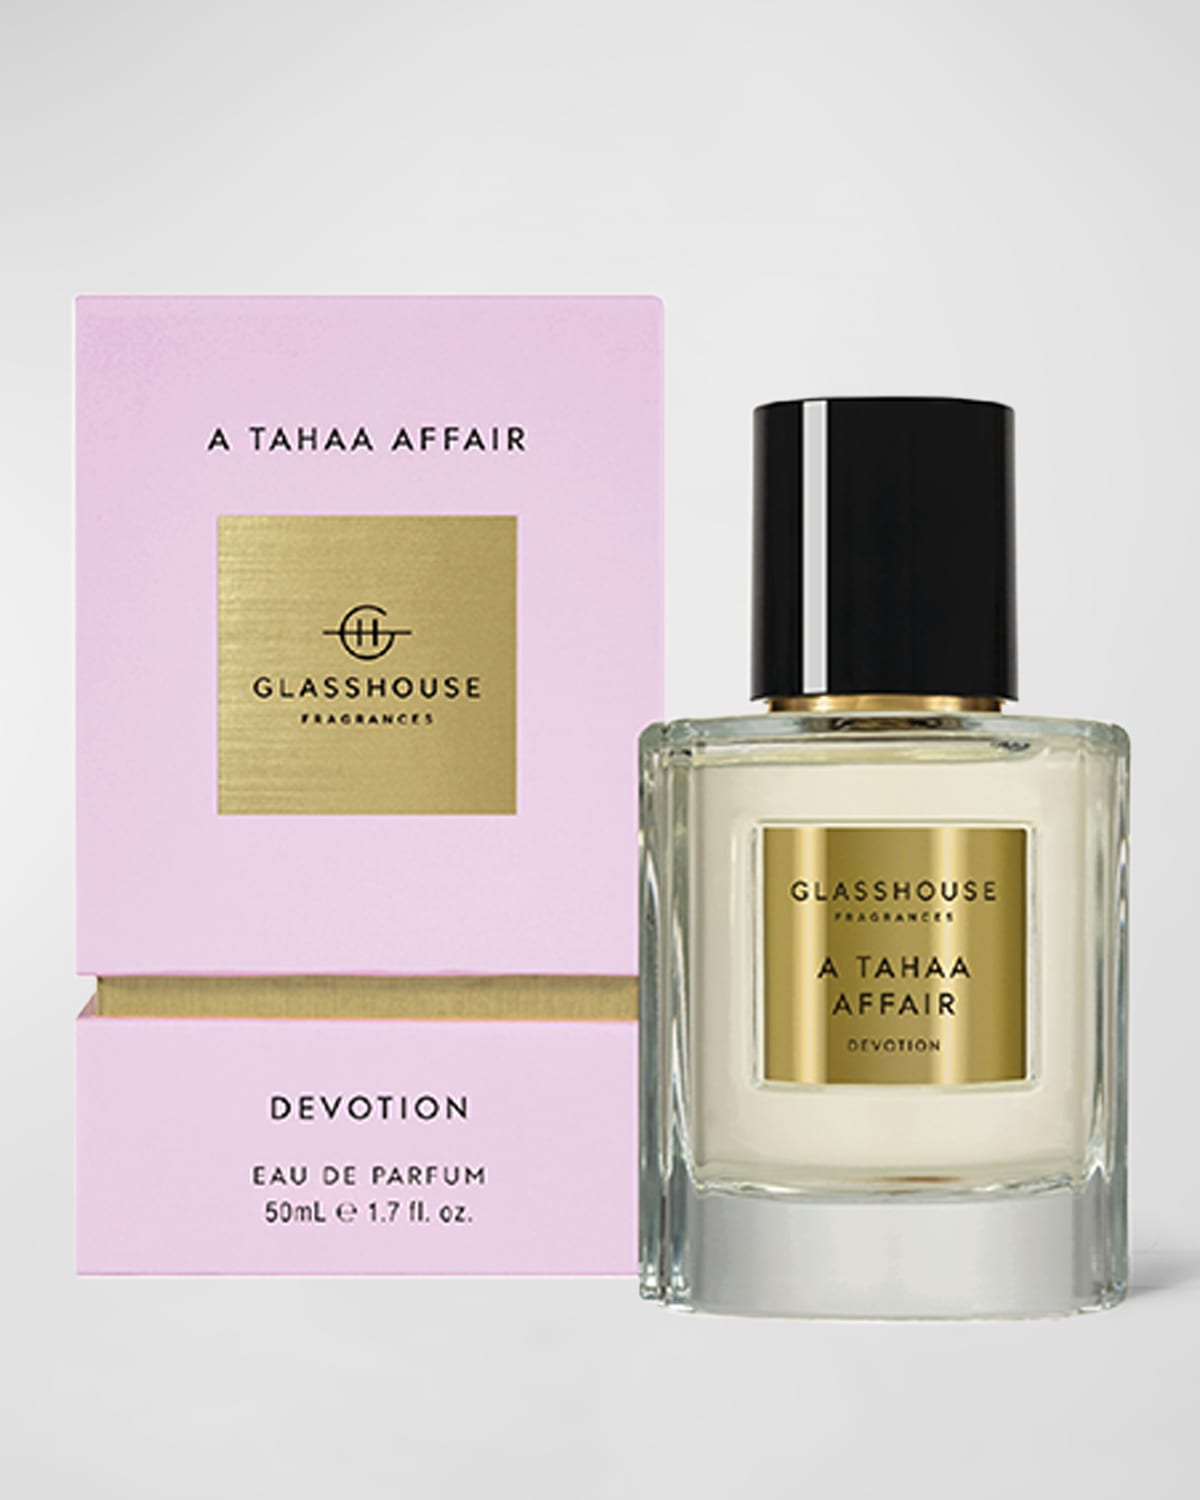 GLASSHOUSE FRAGRANCES A Tahaa Affair - Devotion Eau de Parfum, 1.7 oz.